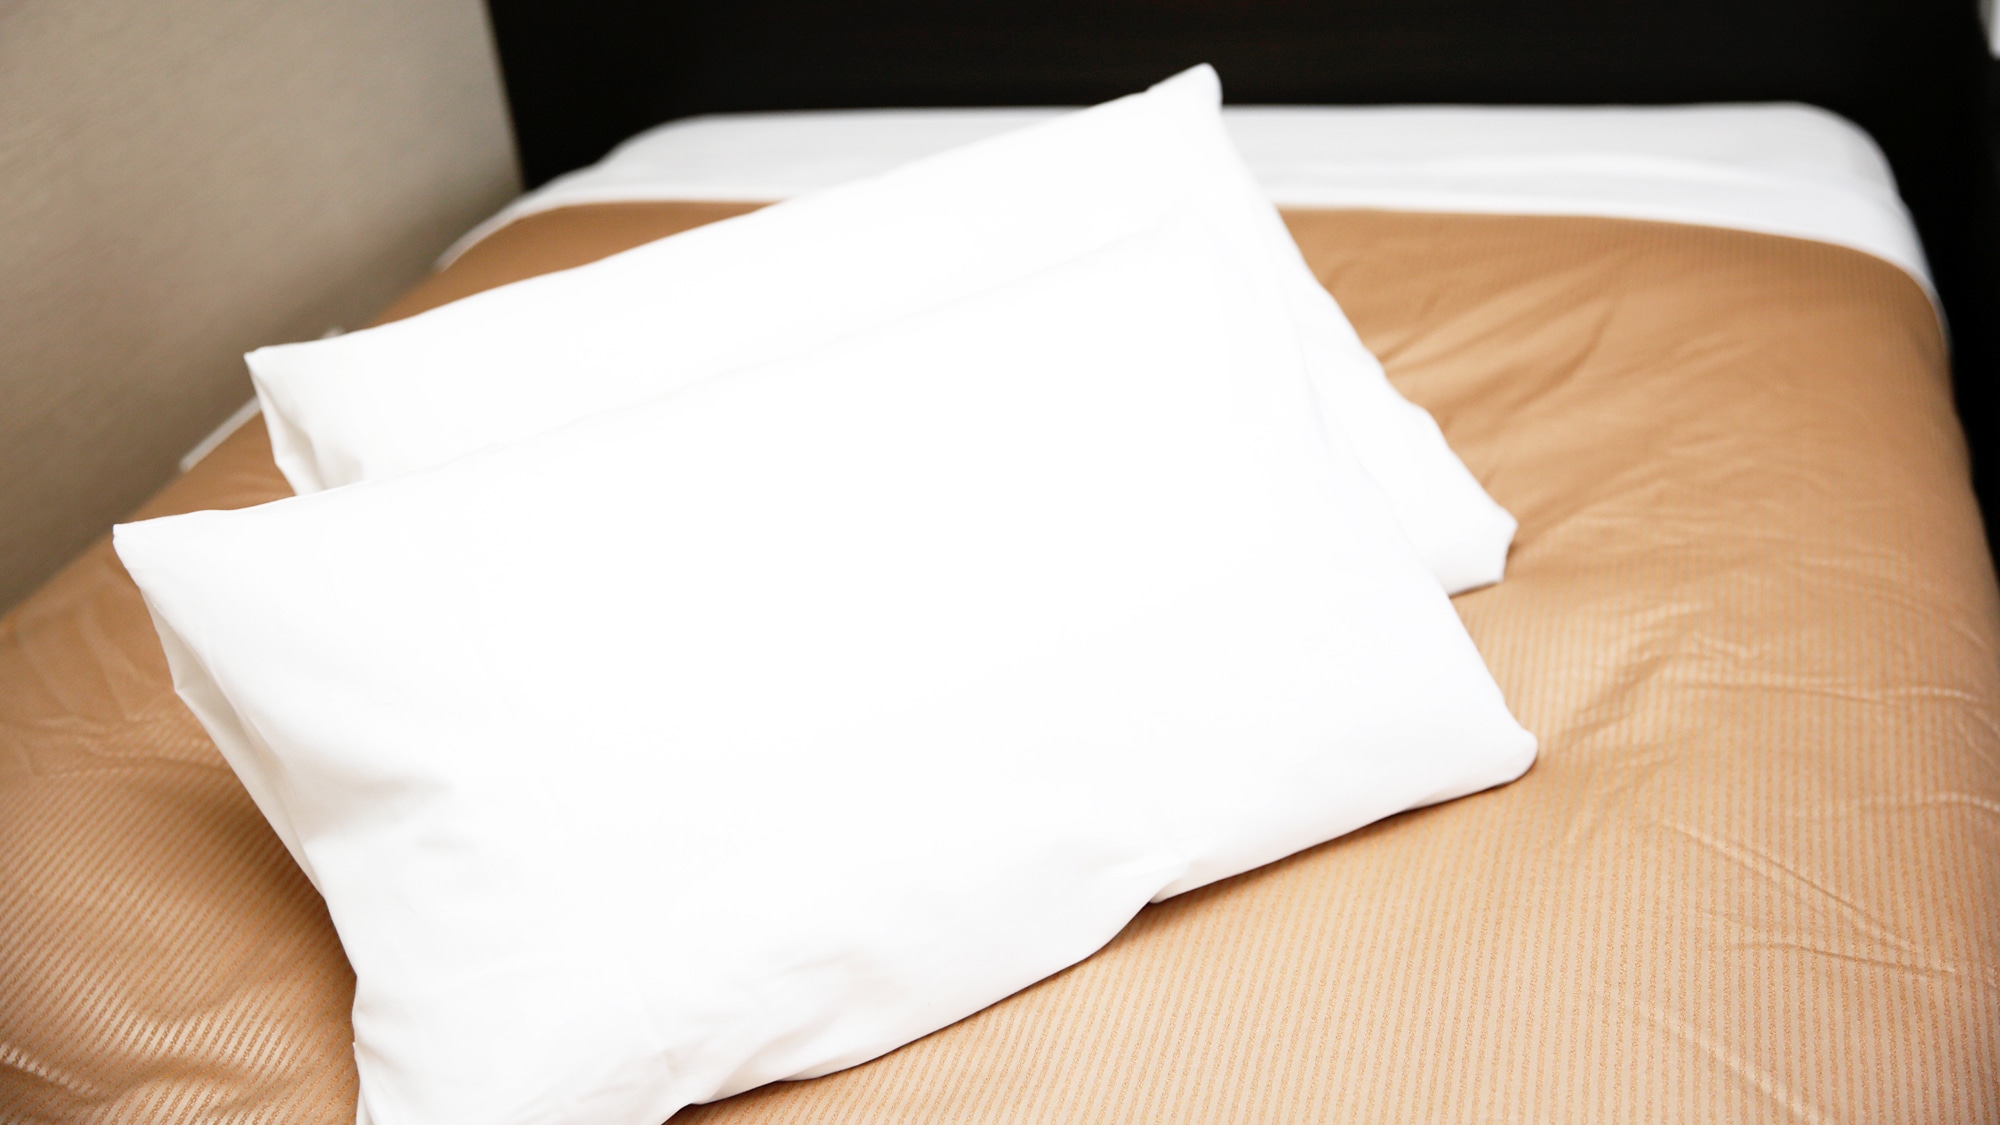 床由 Nihon Bed Co., Ltd. 制造。枕头是避难所